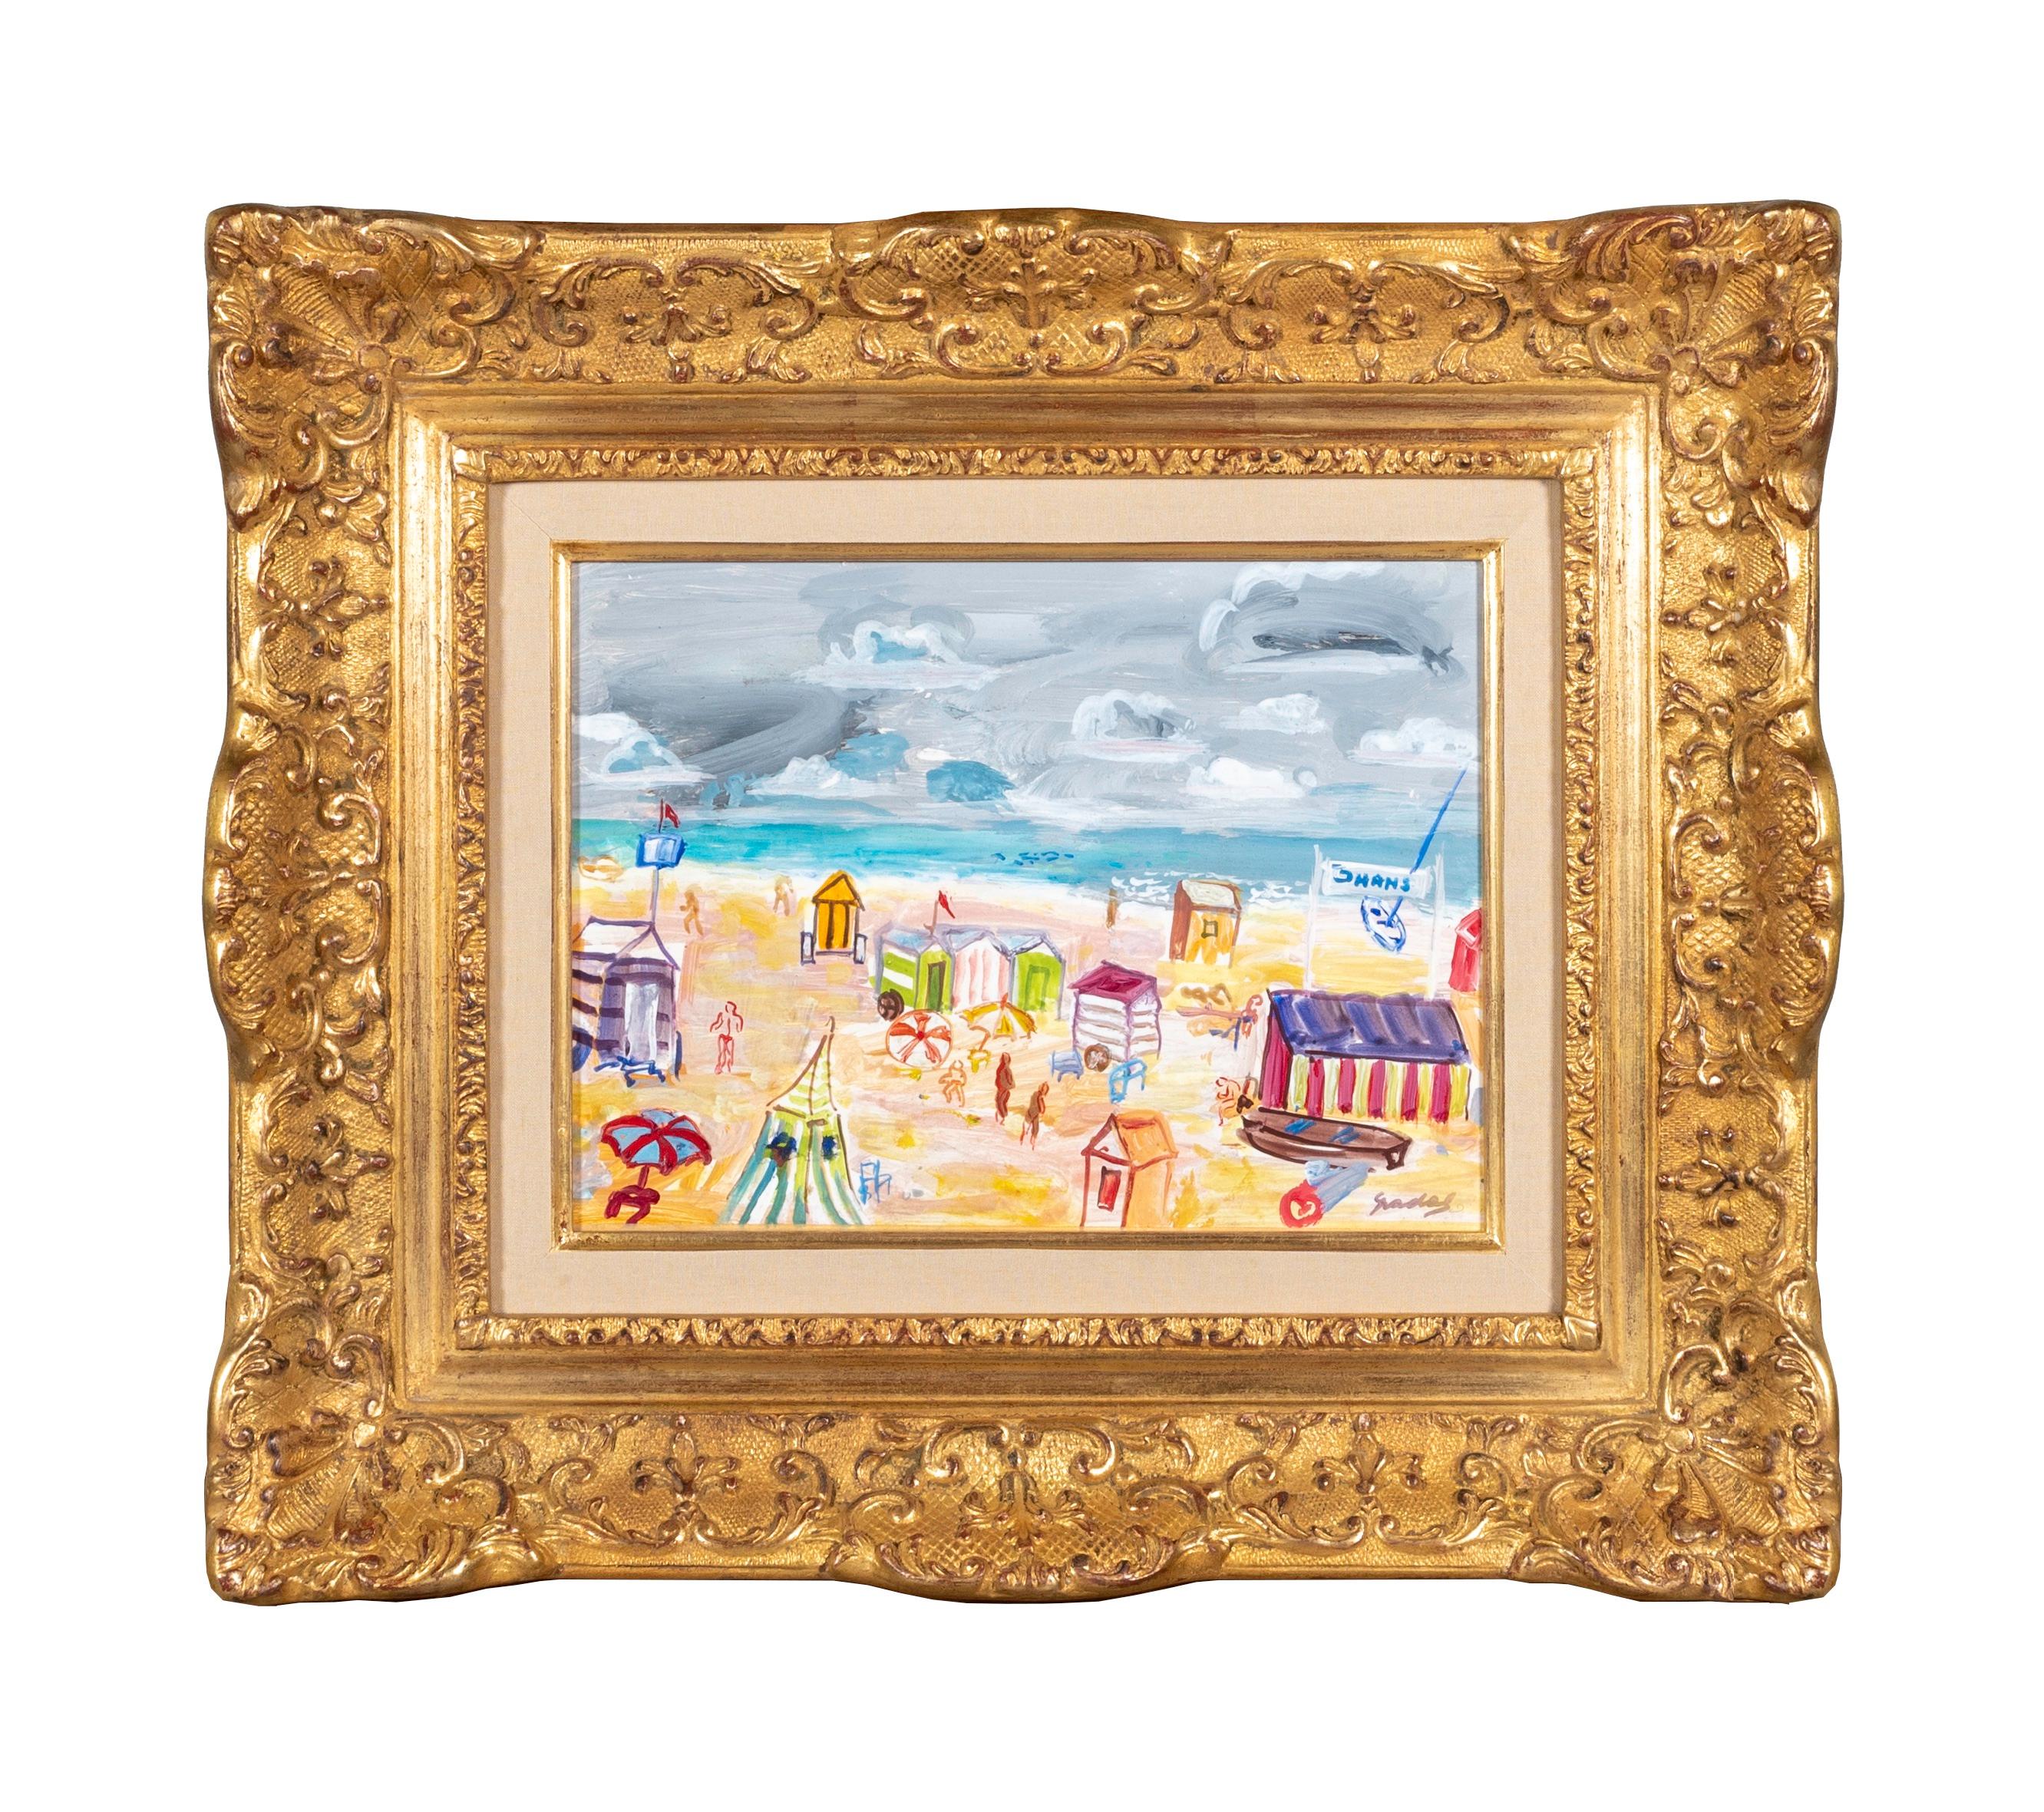 Landscape Painting Carlos Nadal - « La plage », peinture figurative abstraite colorée d'une plage avec des personnages et des huttes